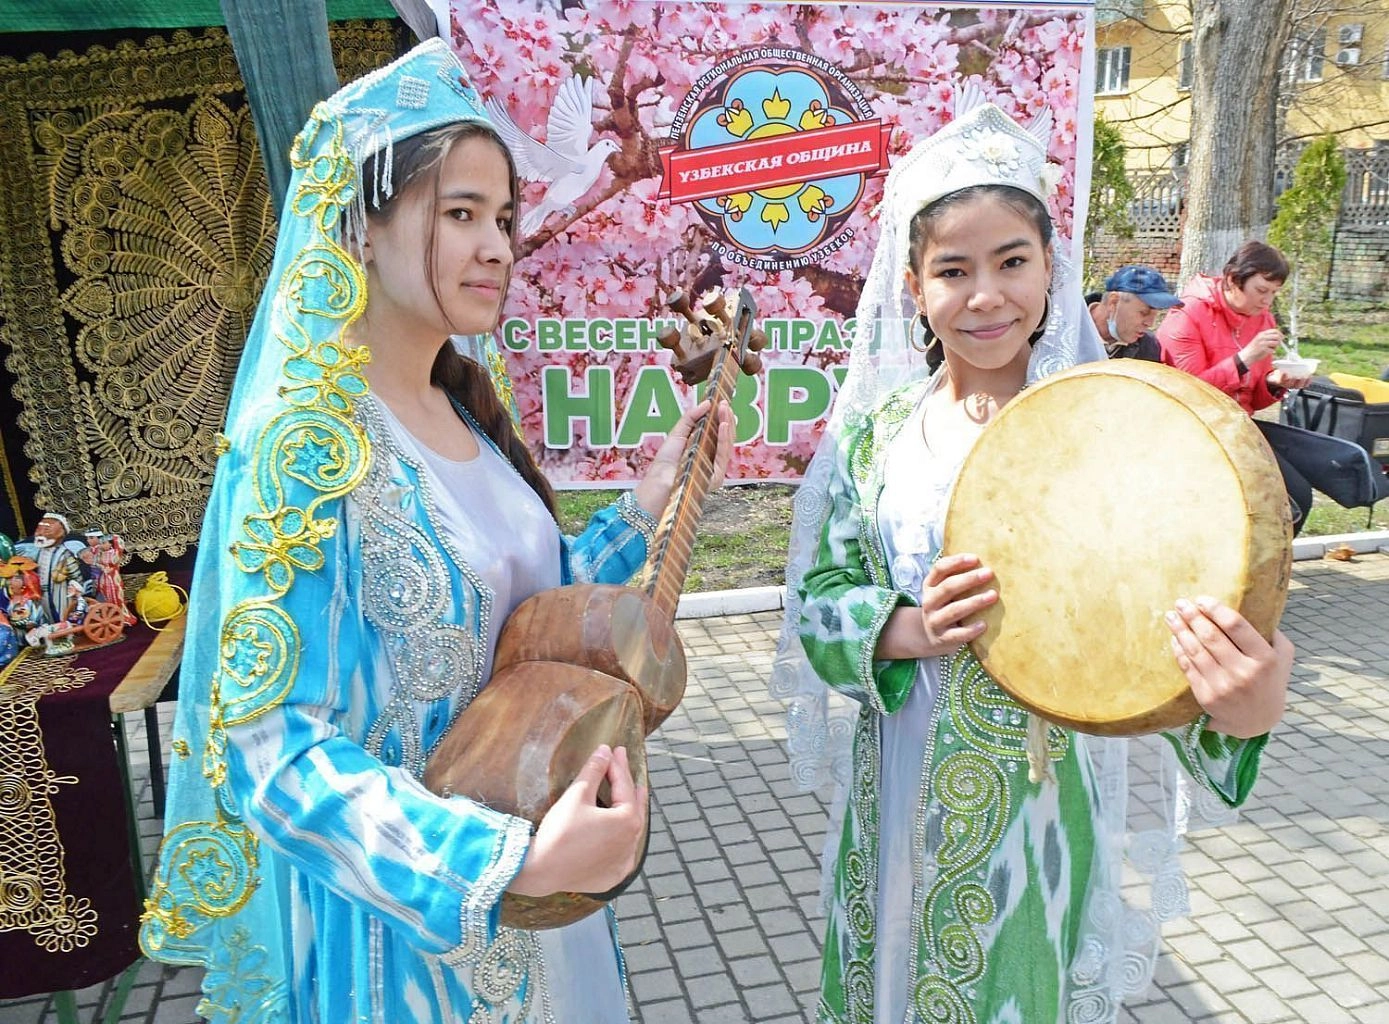 Навруз 2022 Узбекистан. Праздник Навруз в Узбекистане. Навруз праздник весны в Узбекистане. Навруз в Узбекистане 2021.